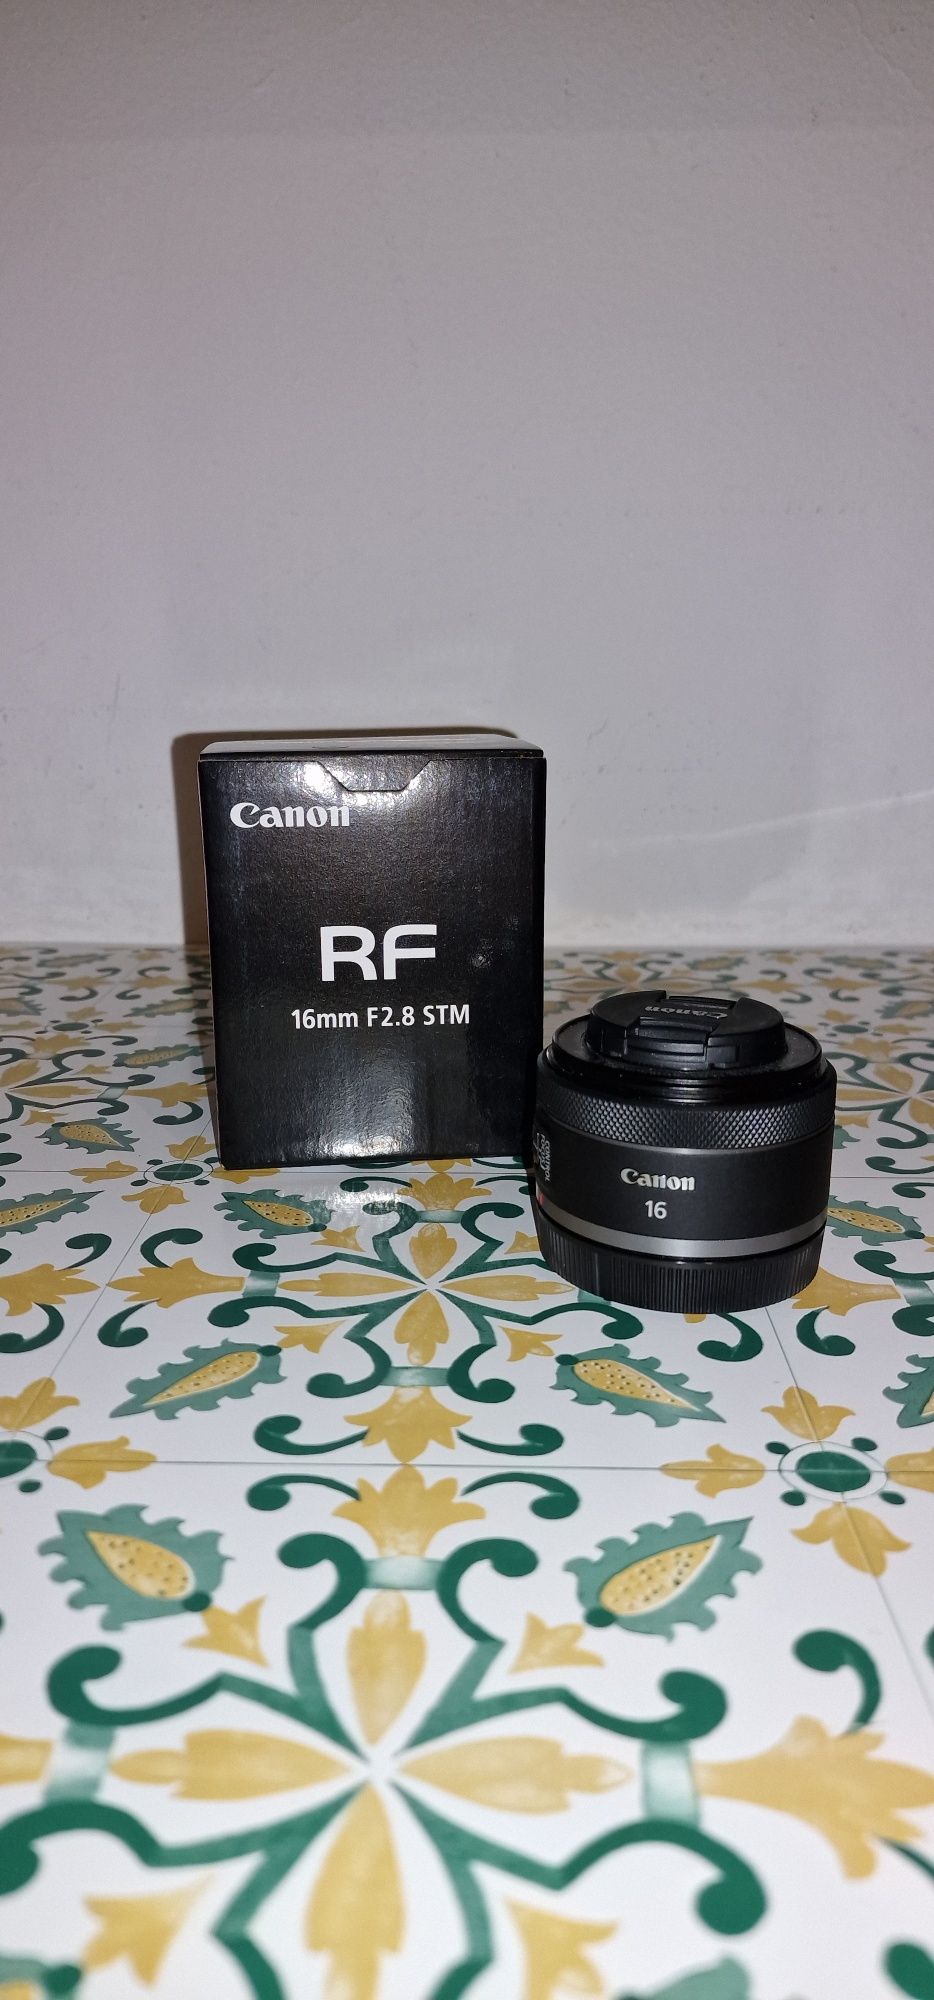 Canon rf 16mm como nova